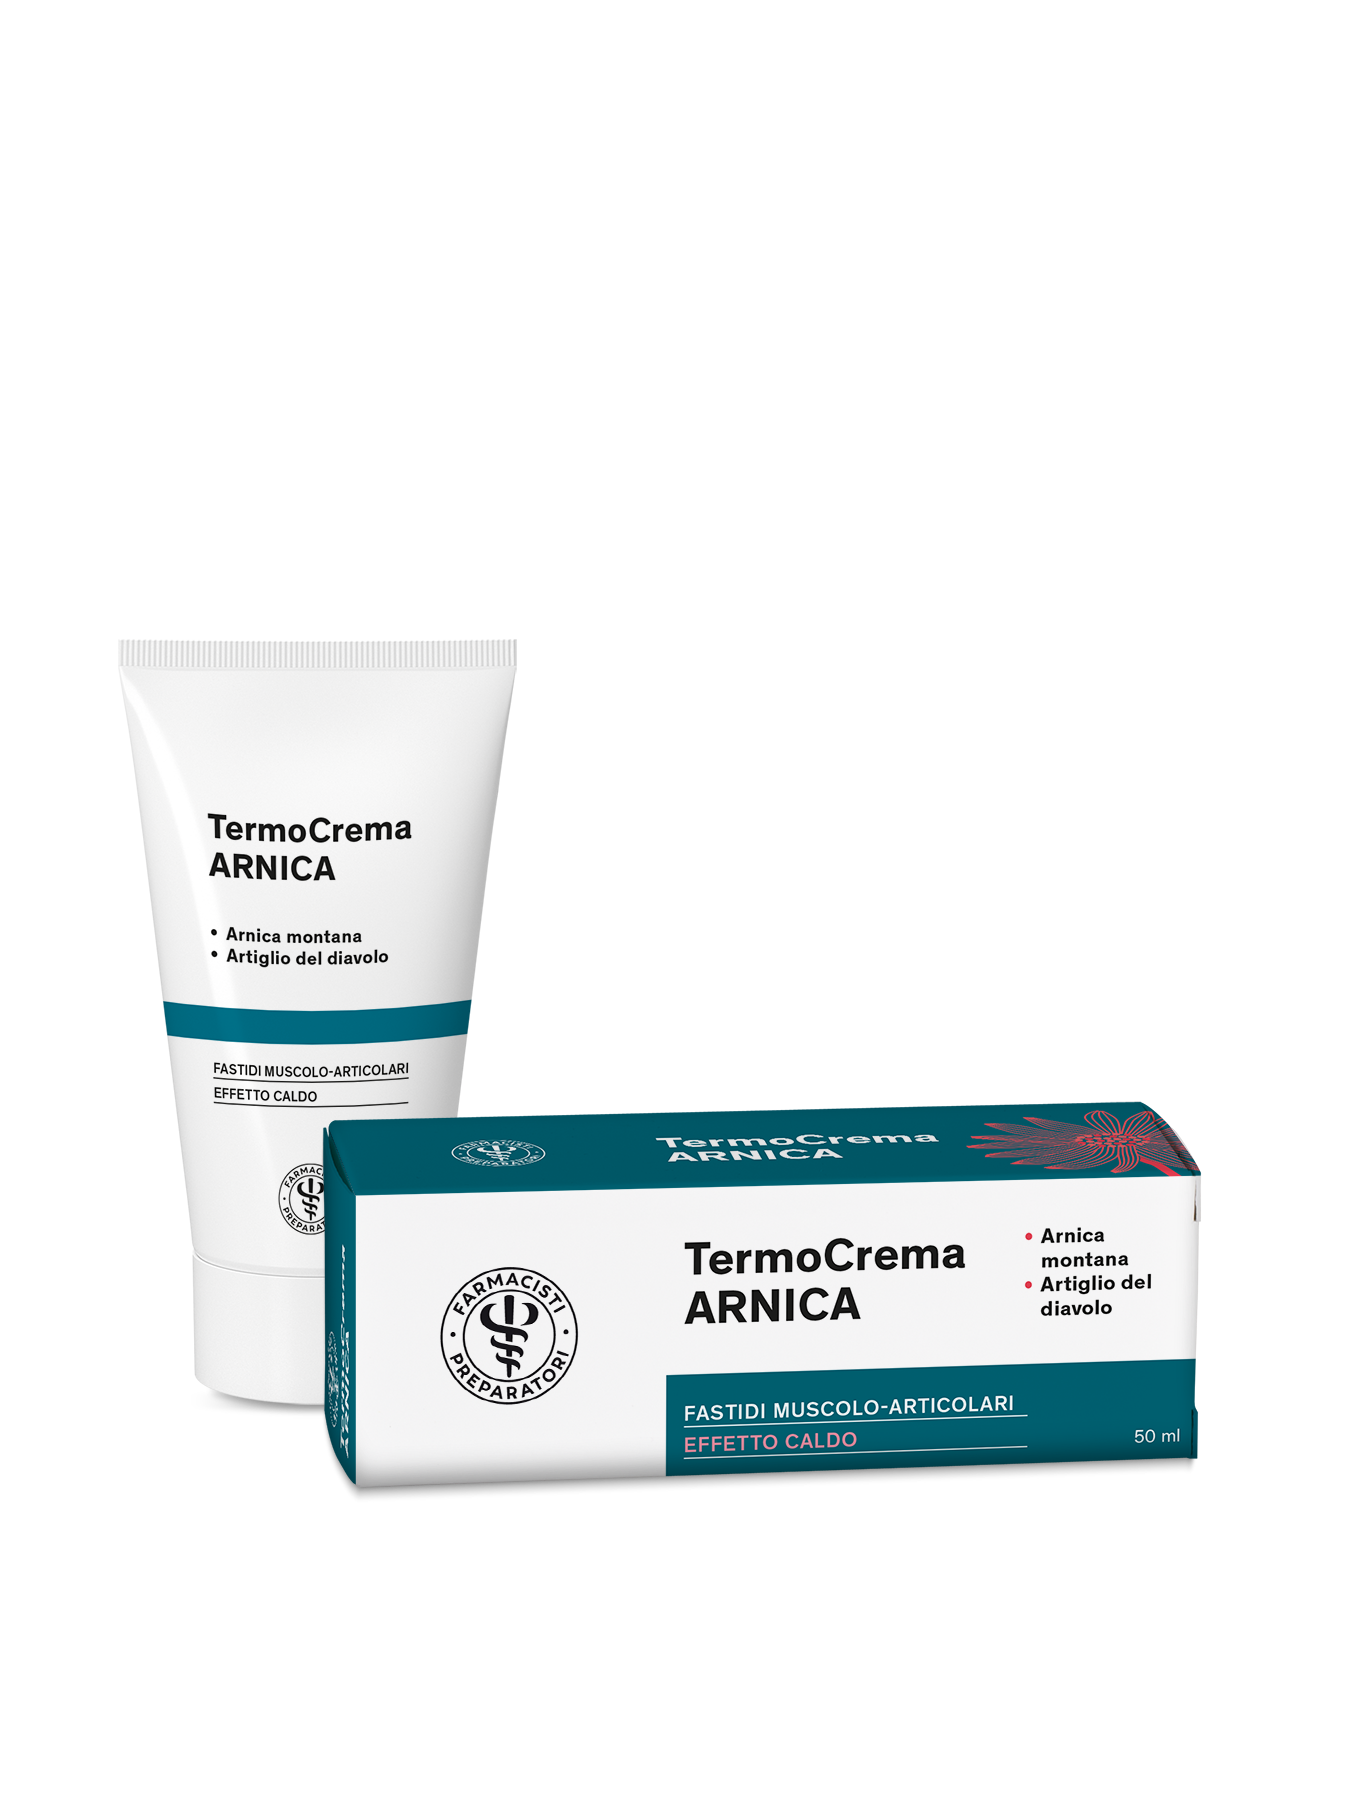 TermoCrema ARNICA – Farmacisti Preparatori